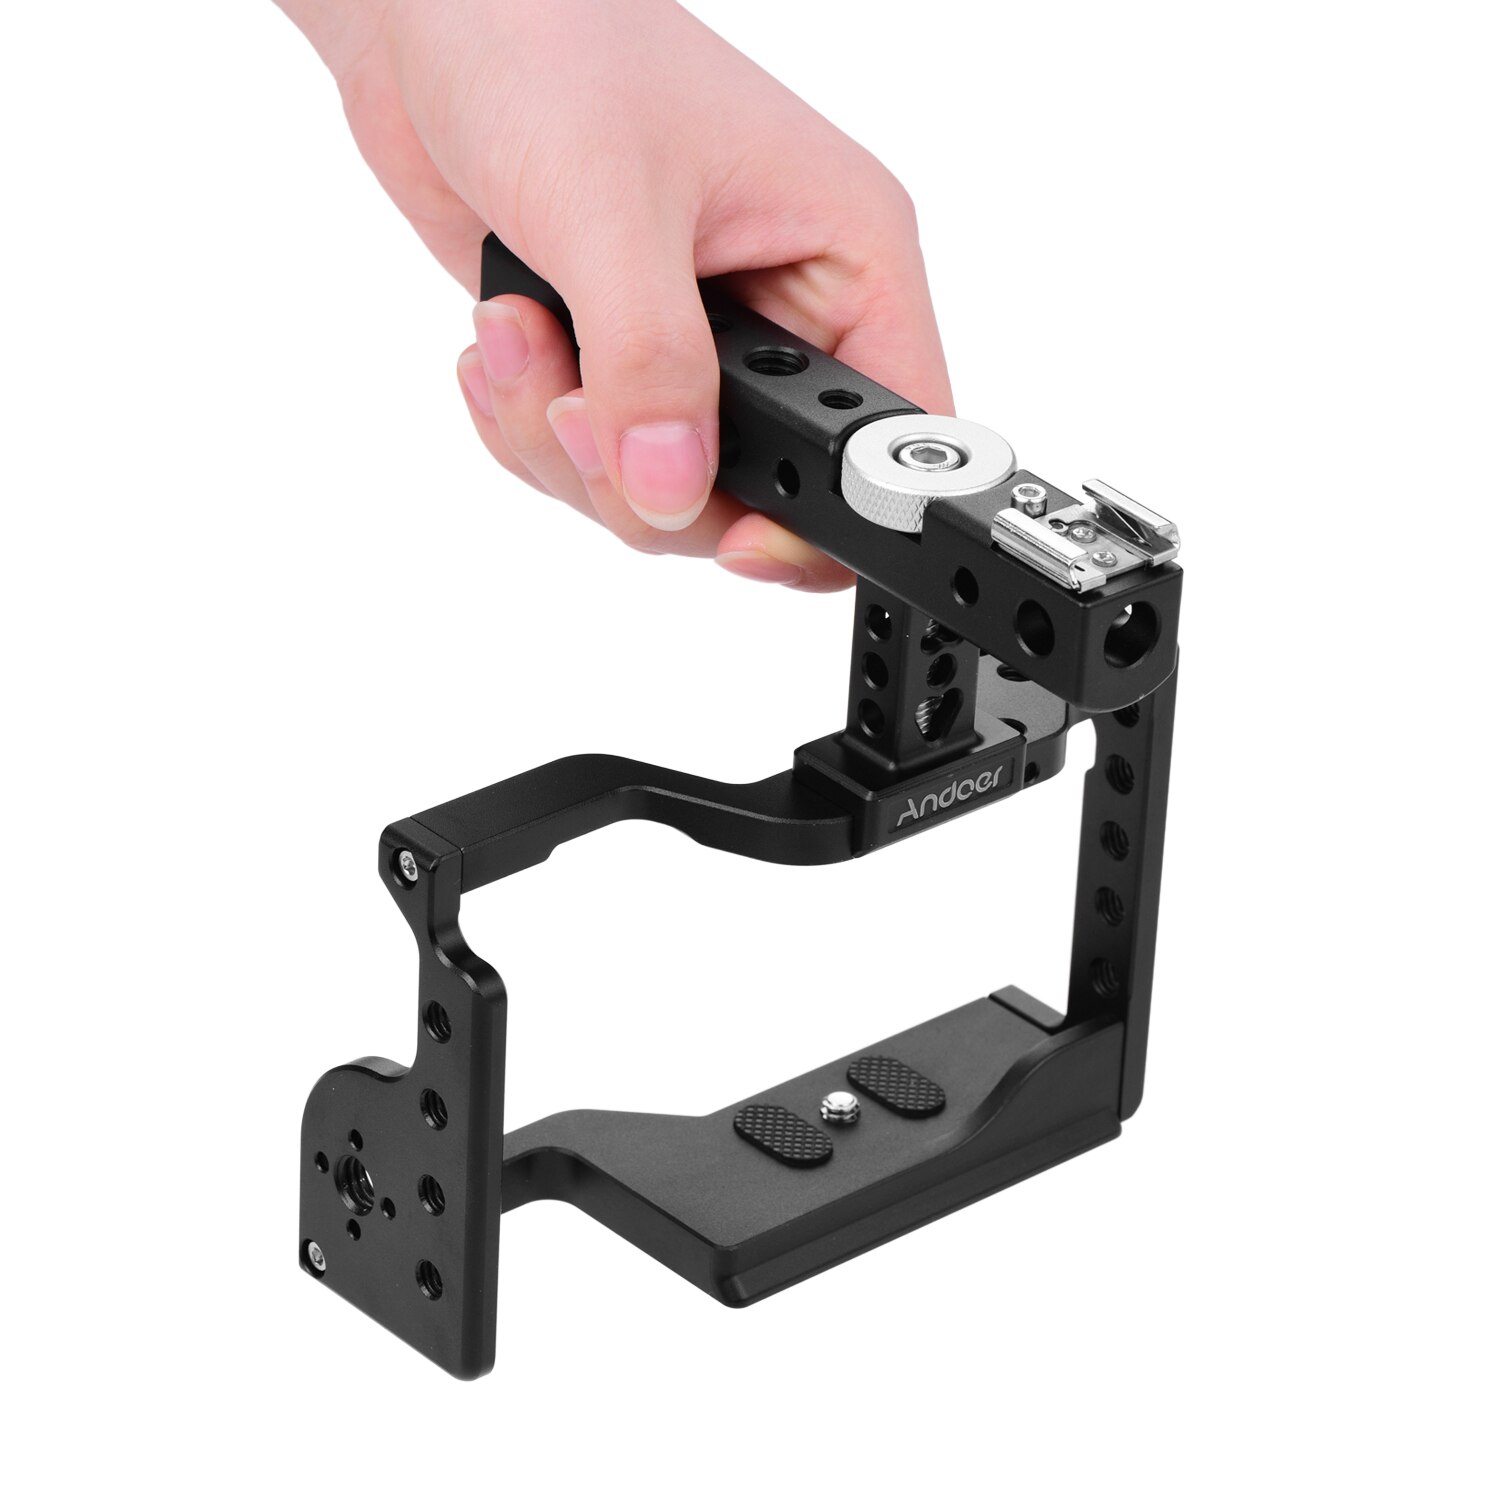 Andoer Camera Kooi Video Accessoires Kit Met Top Handvat Camera Case Bracket Extension Draad Gaten Koud Shoe Mount Voor Sony